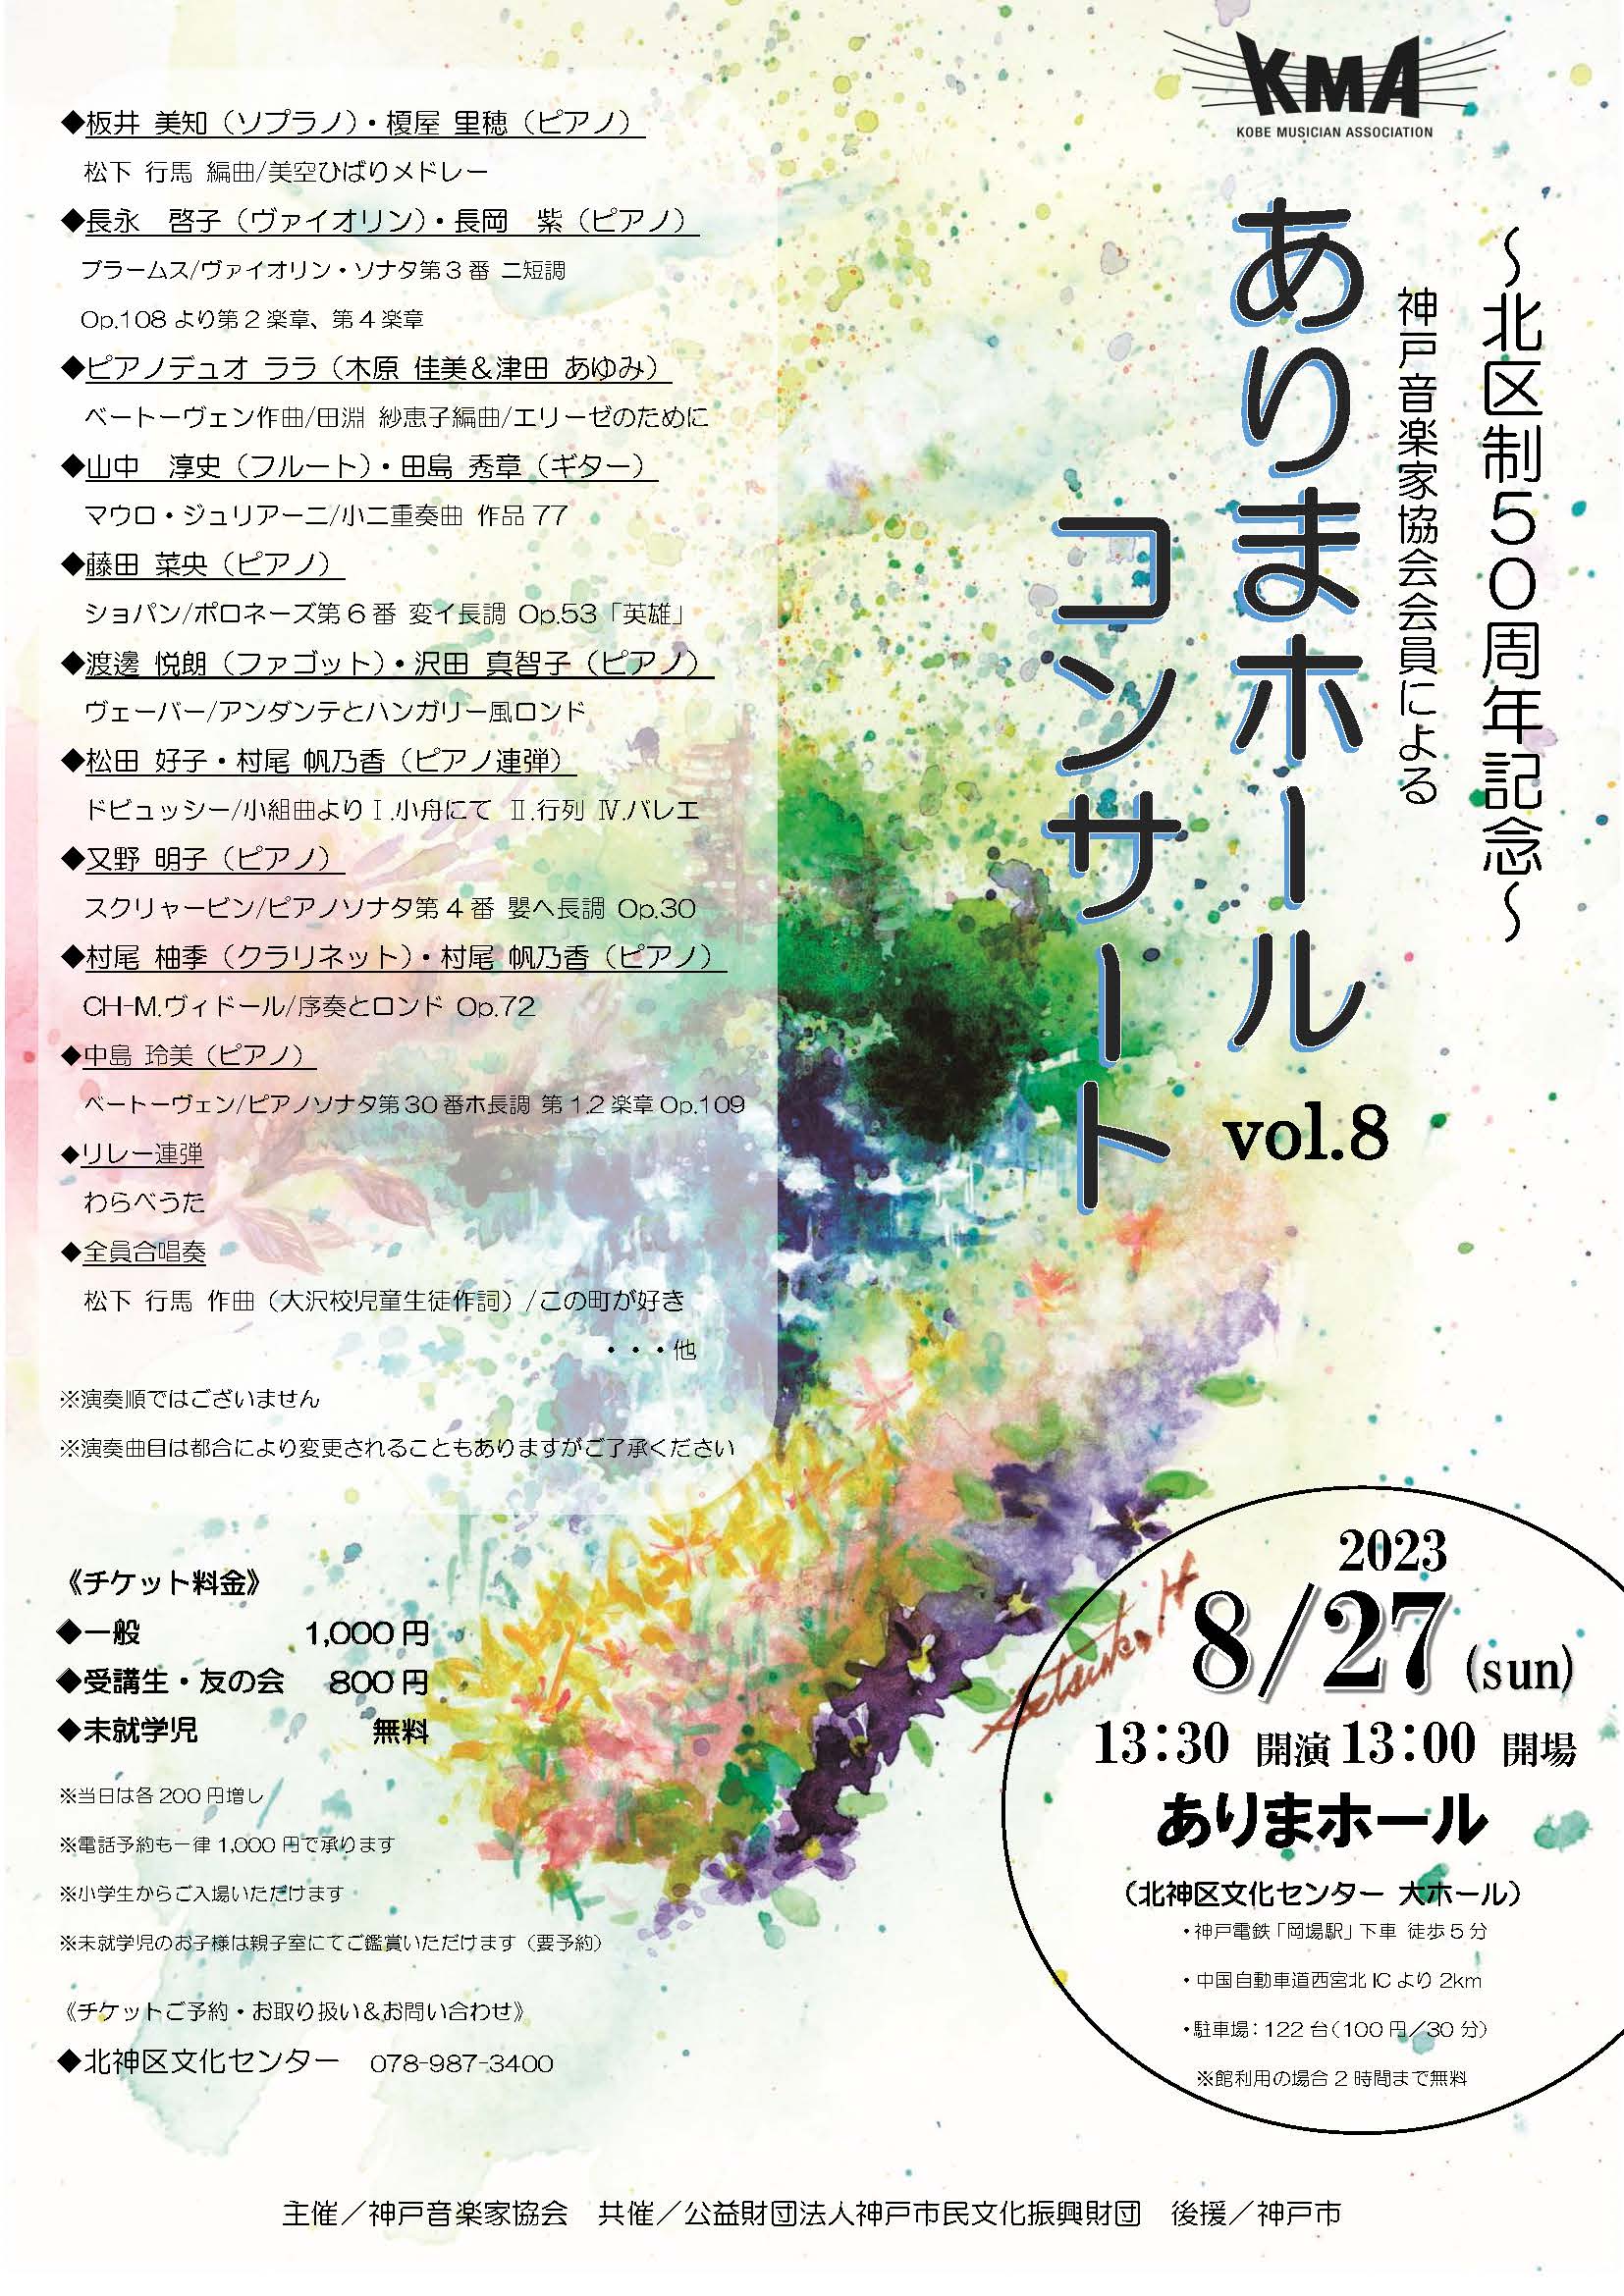 ありまホールコンサート vol.8チラシ1